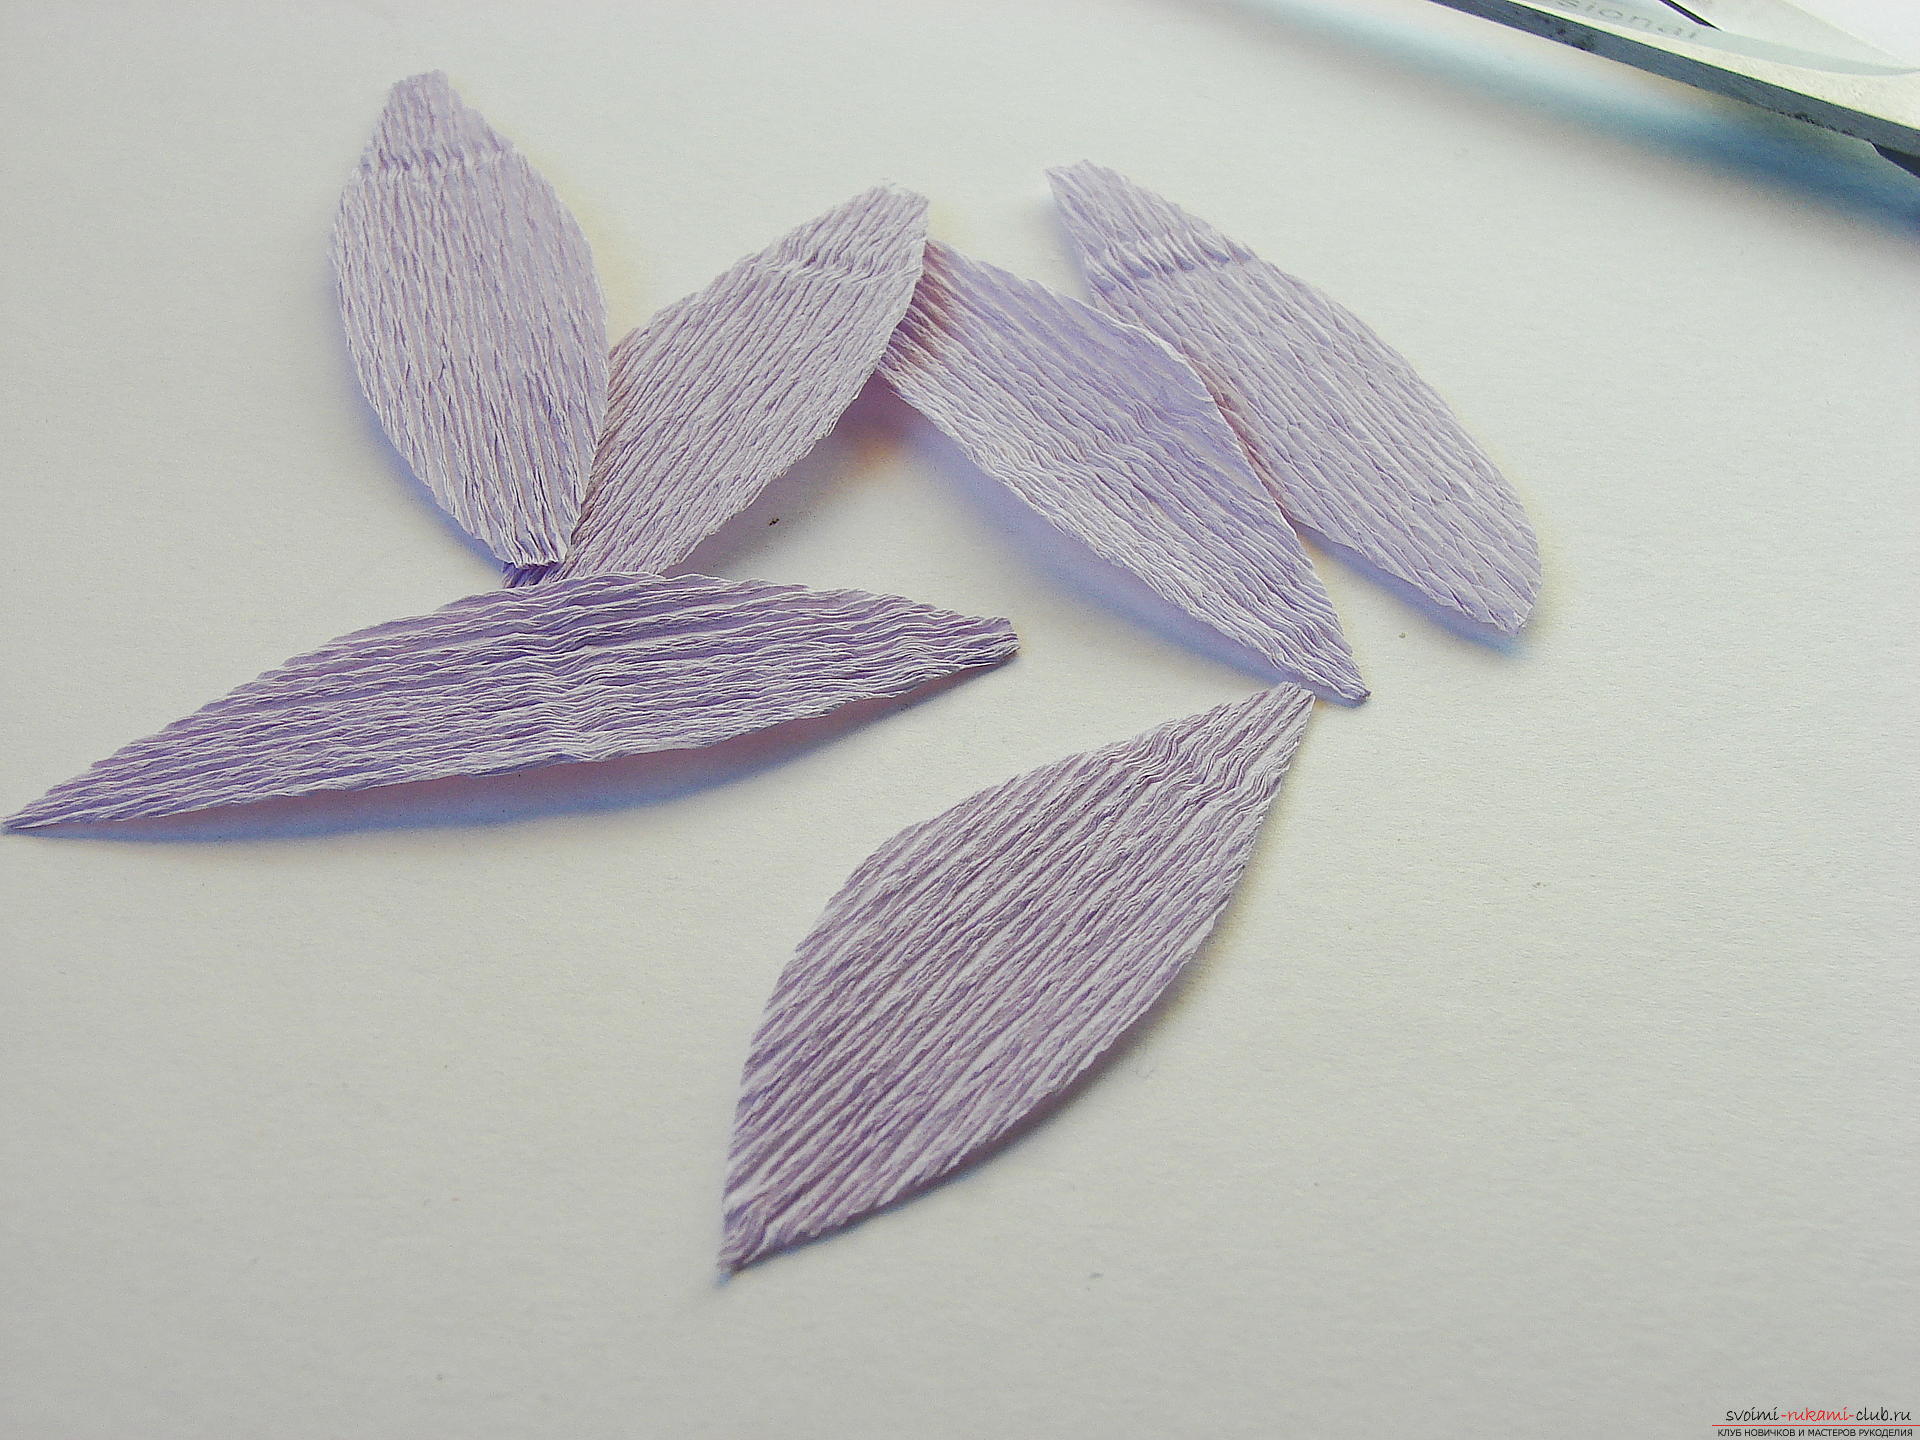 Мастер-класс научит как сделать гофрированные цветы своими руками – лилии из гофрированной бумаги.. Фото №5